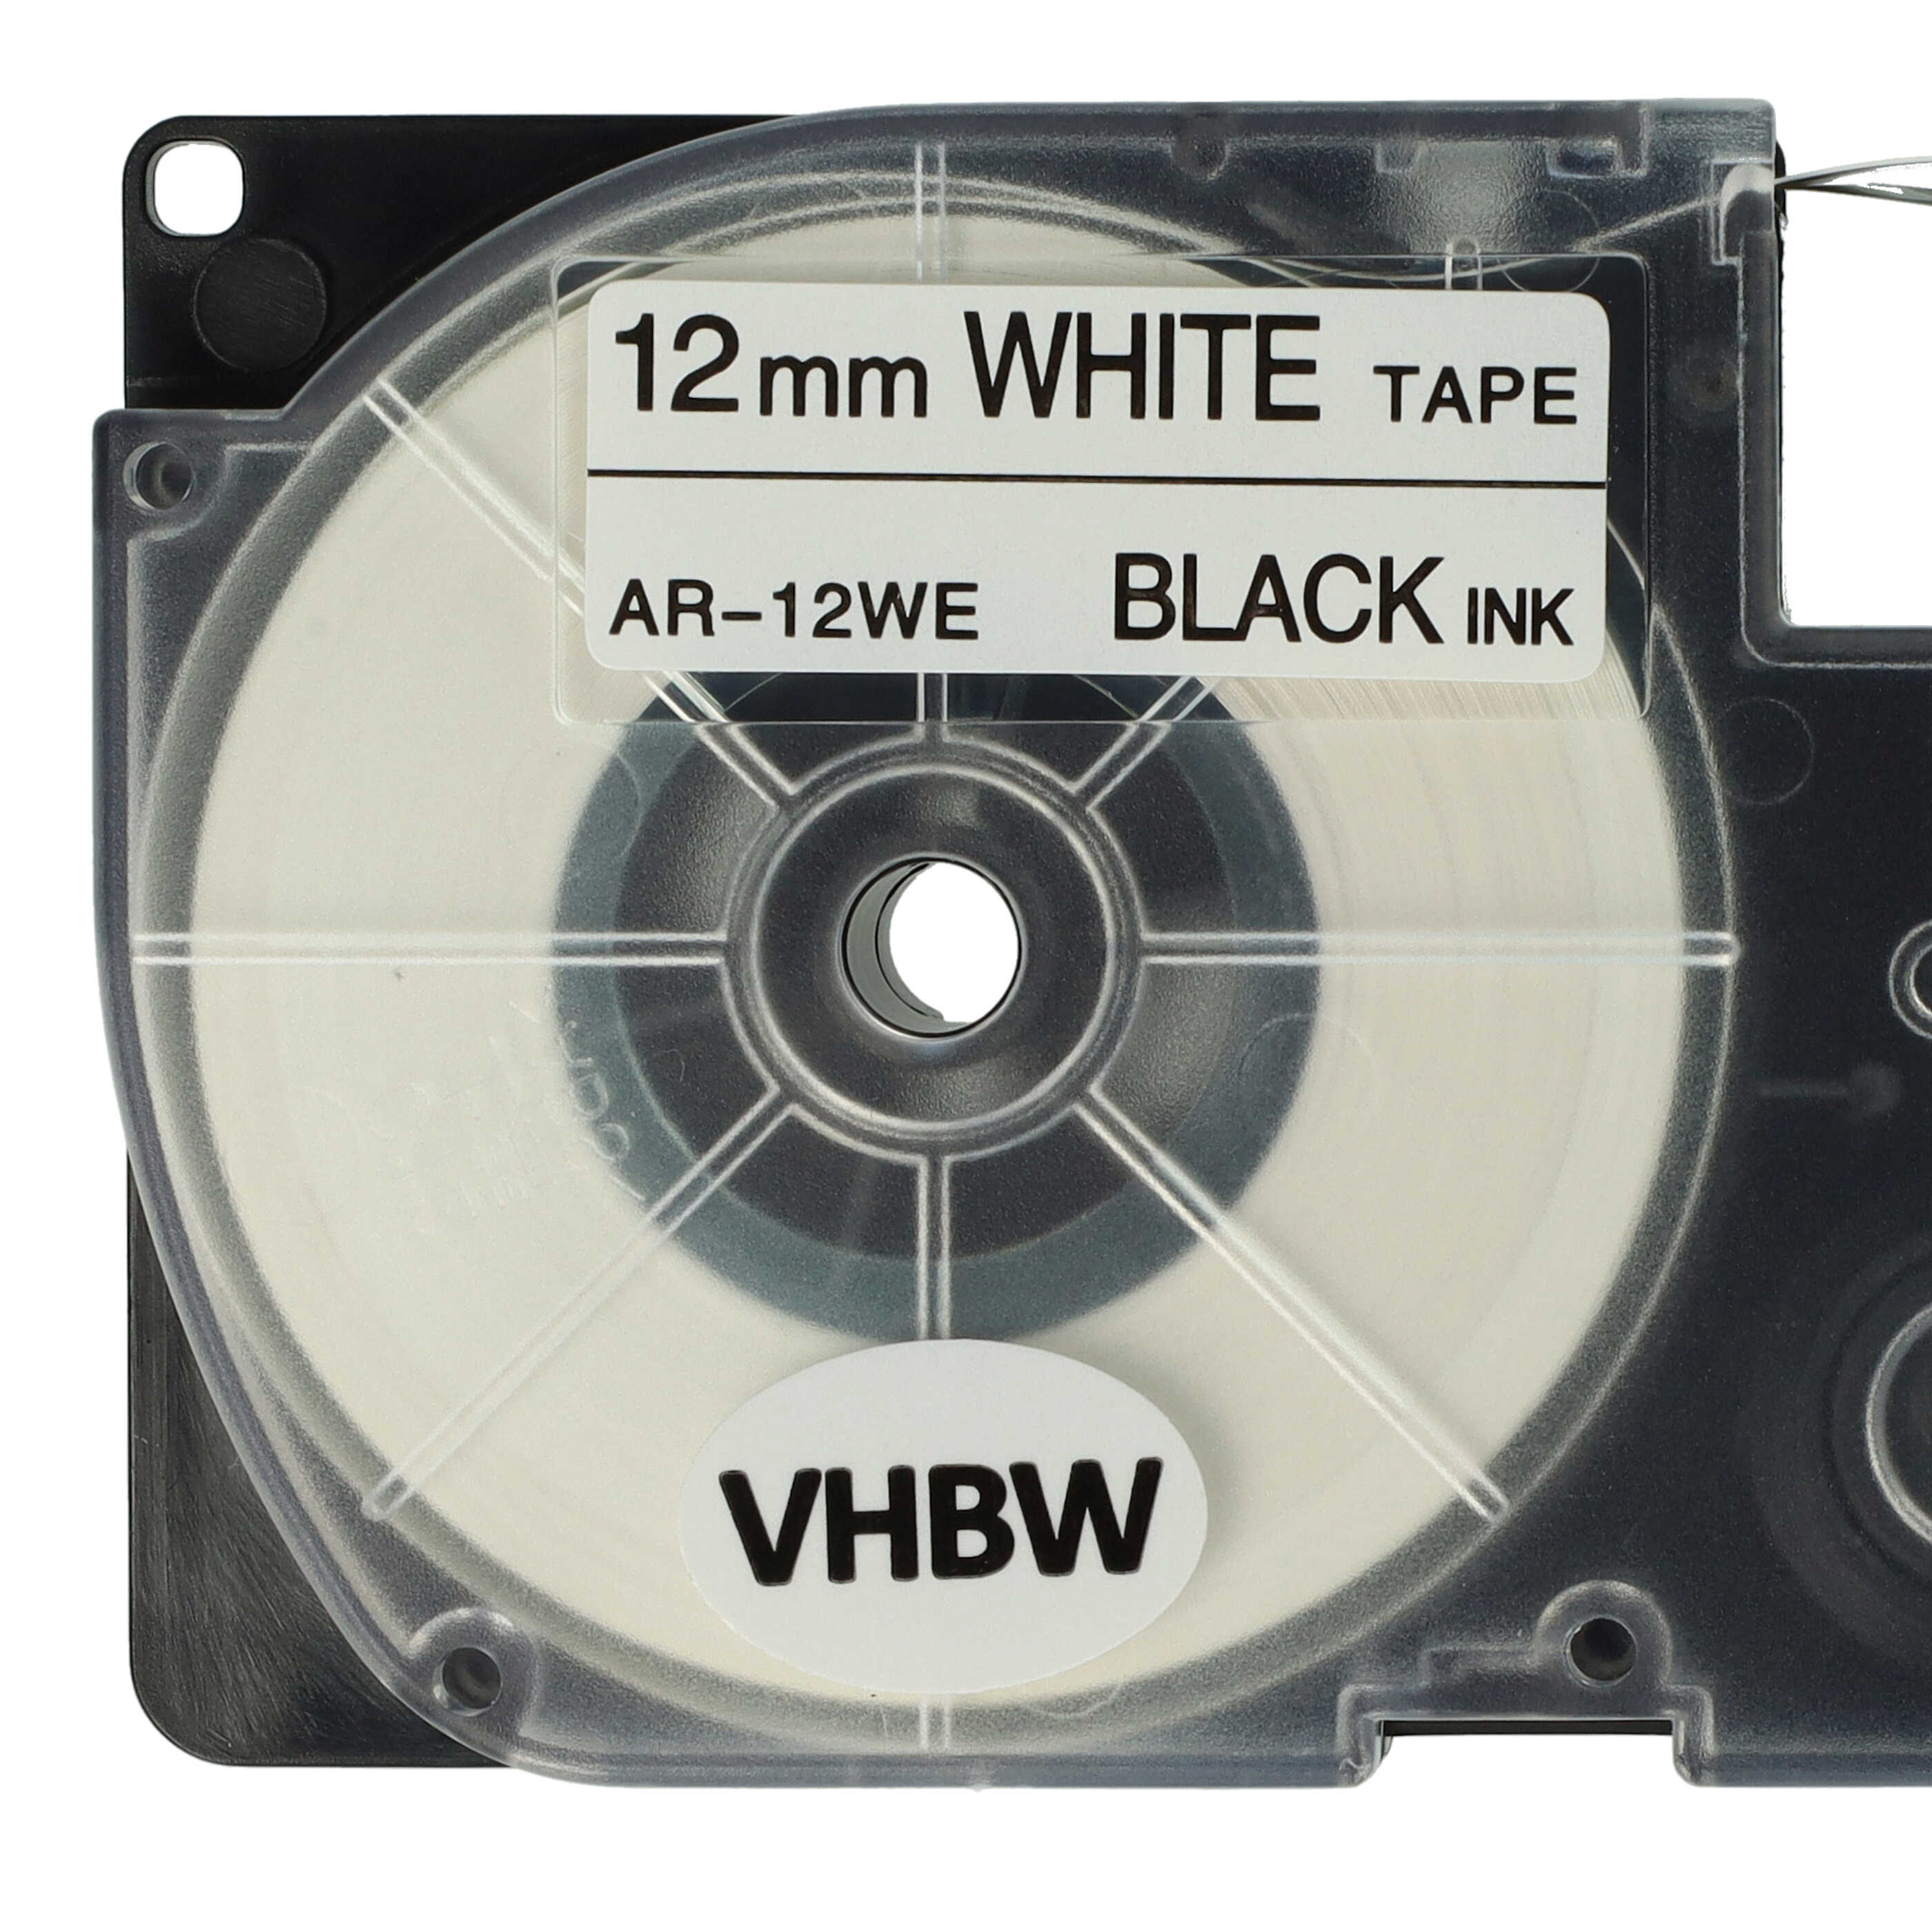 Casete cinta escritura reemplaza Casio XR-12WE, XR-12WE1 Negro su Blanco